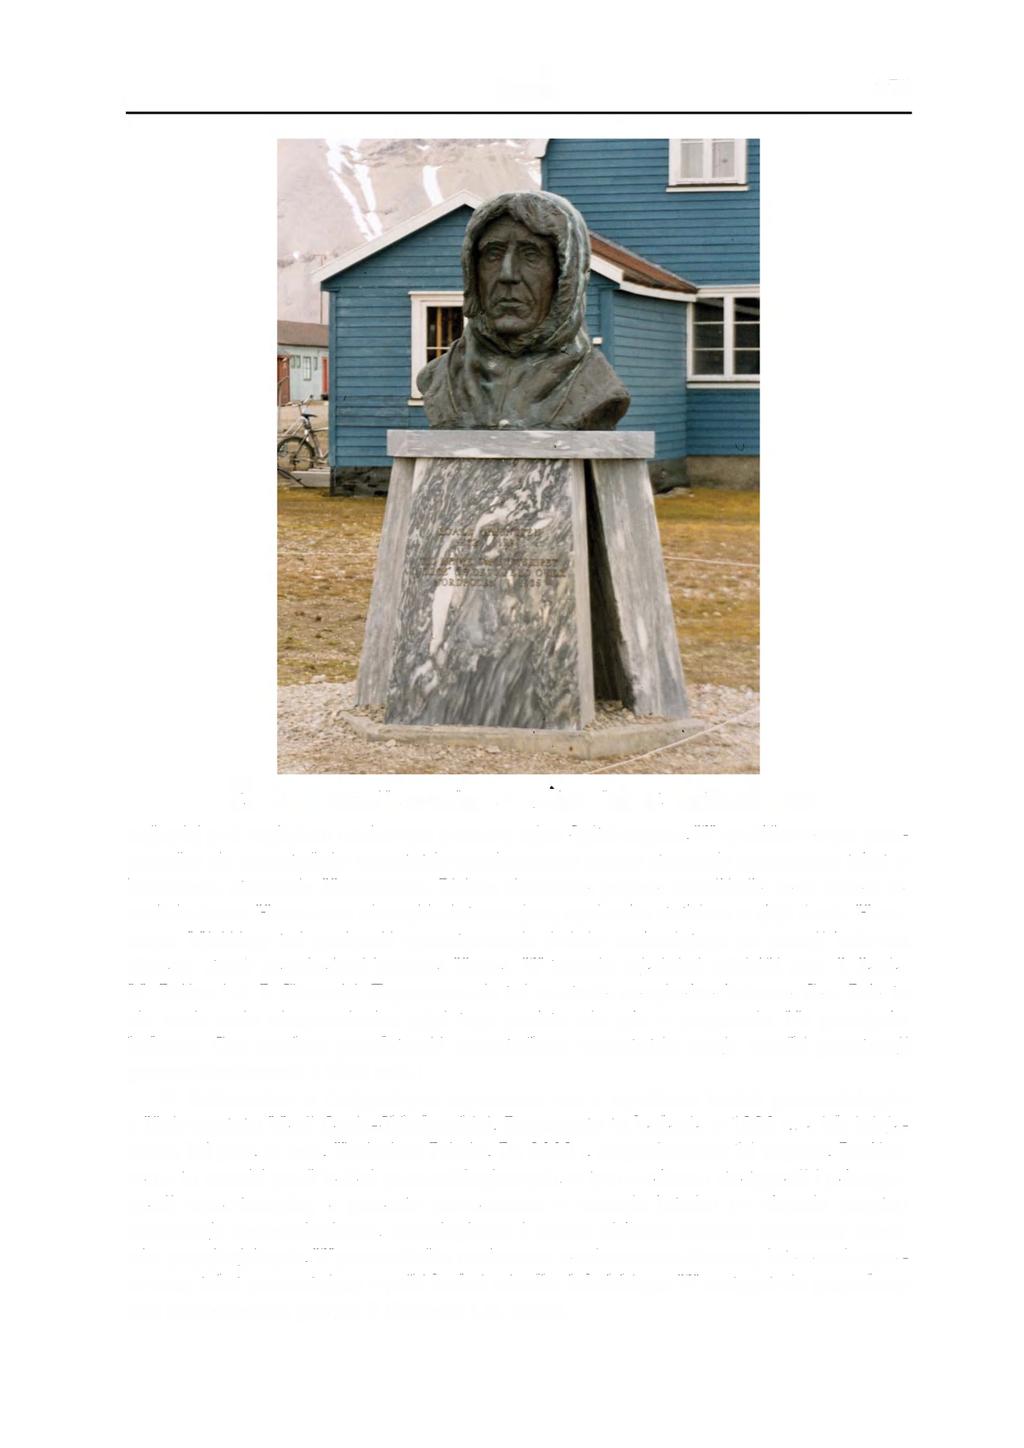 Kronika 379 Fot. 4. Popiersie Roalda Amundsena w Ny-Alesundzie. Fot. Jan Szupryczyński najlepiej pod względem naukowym poznany rejon Spitsbergenu.